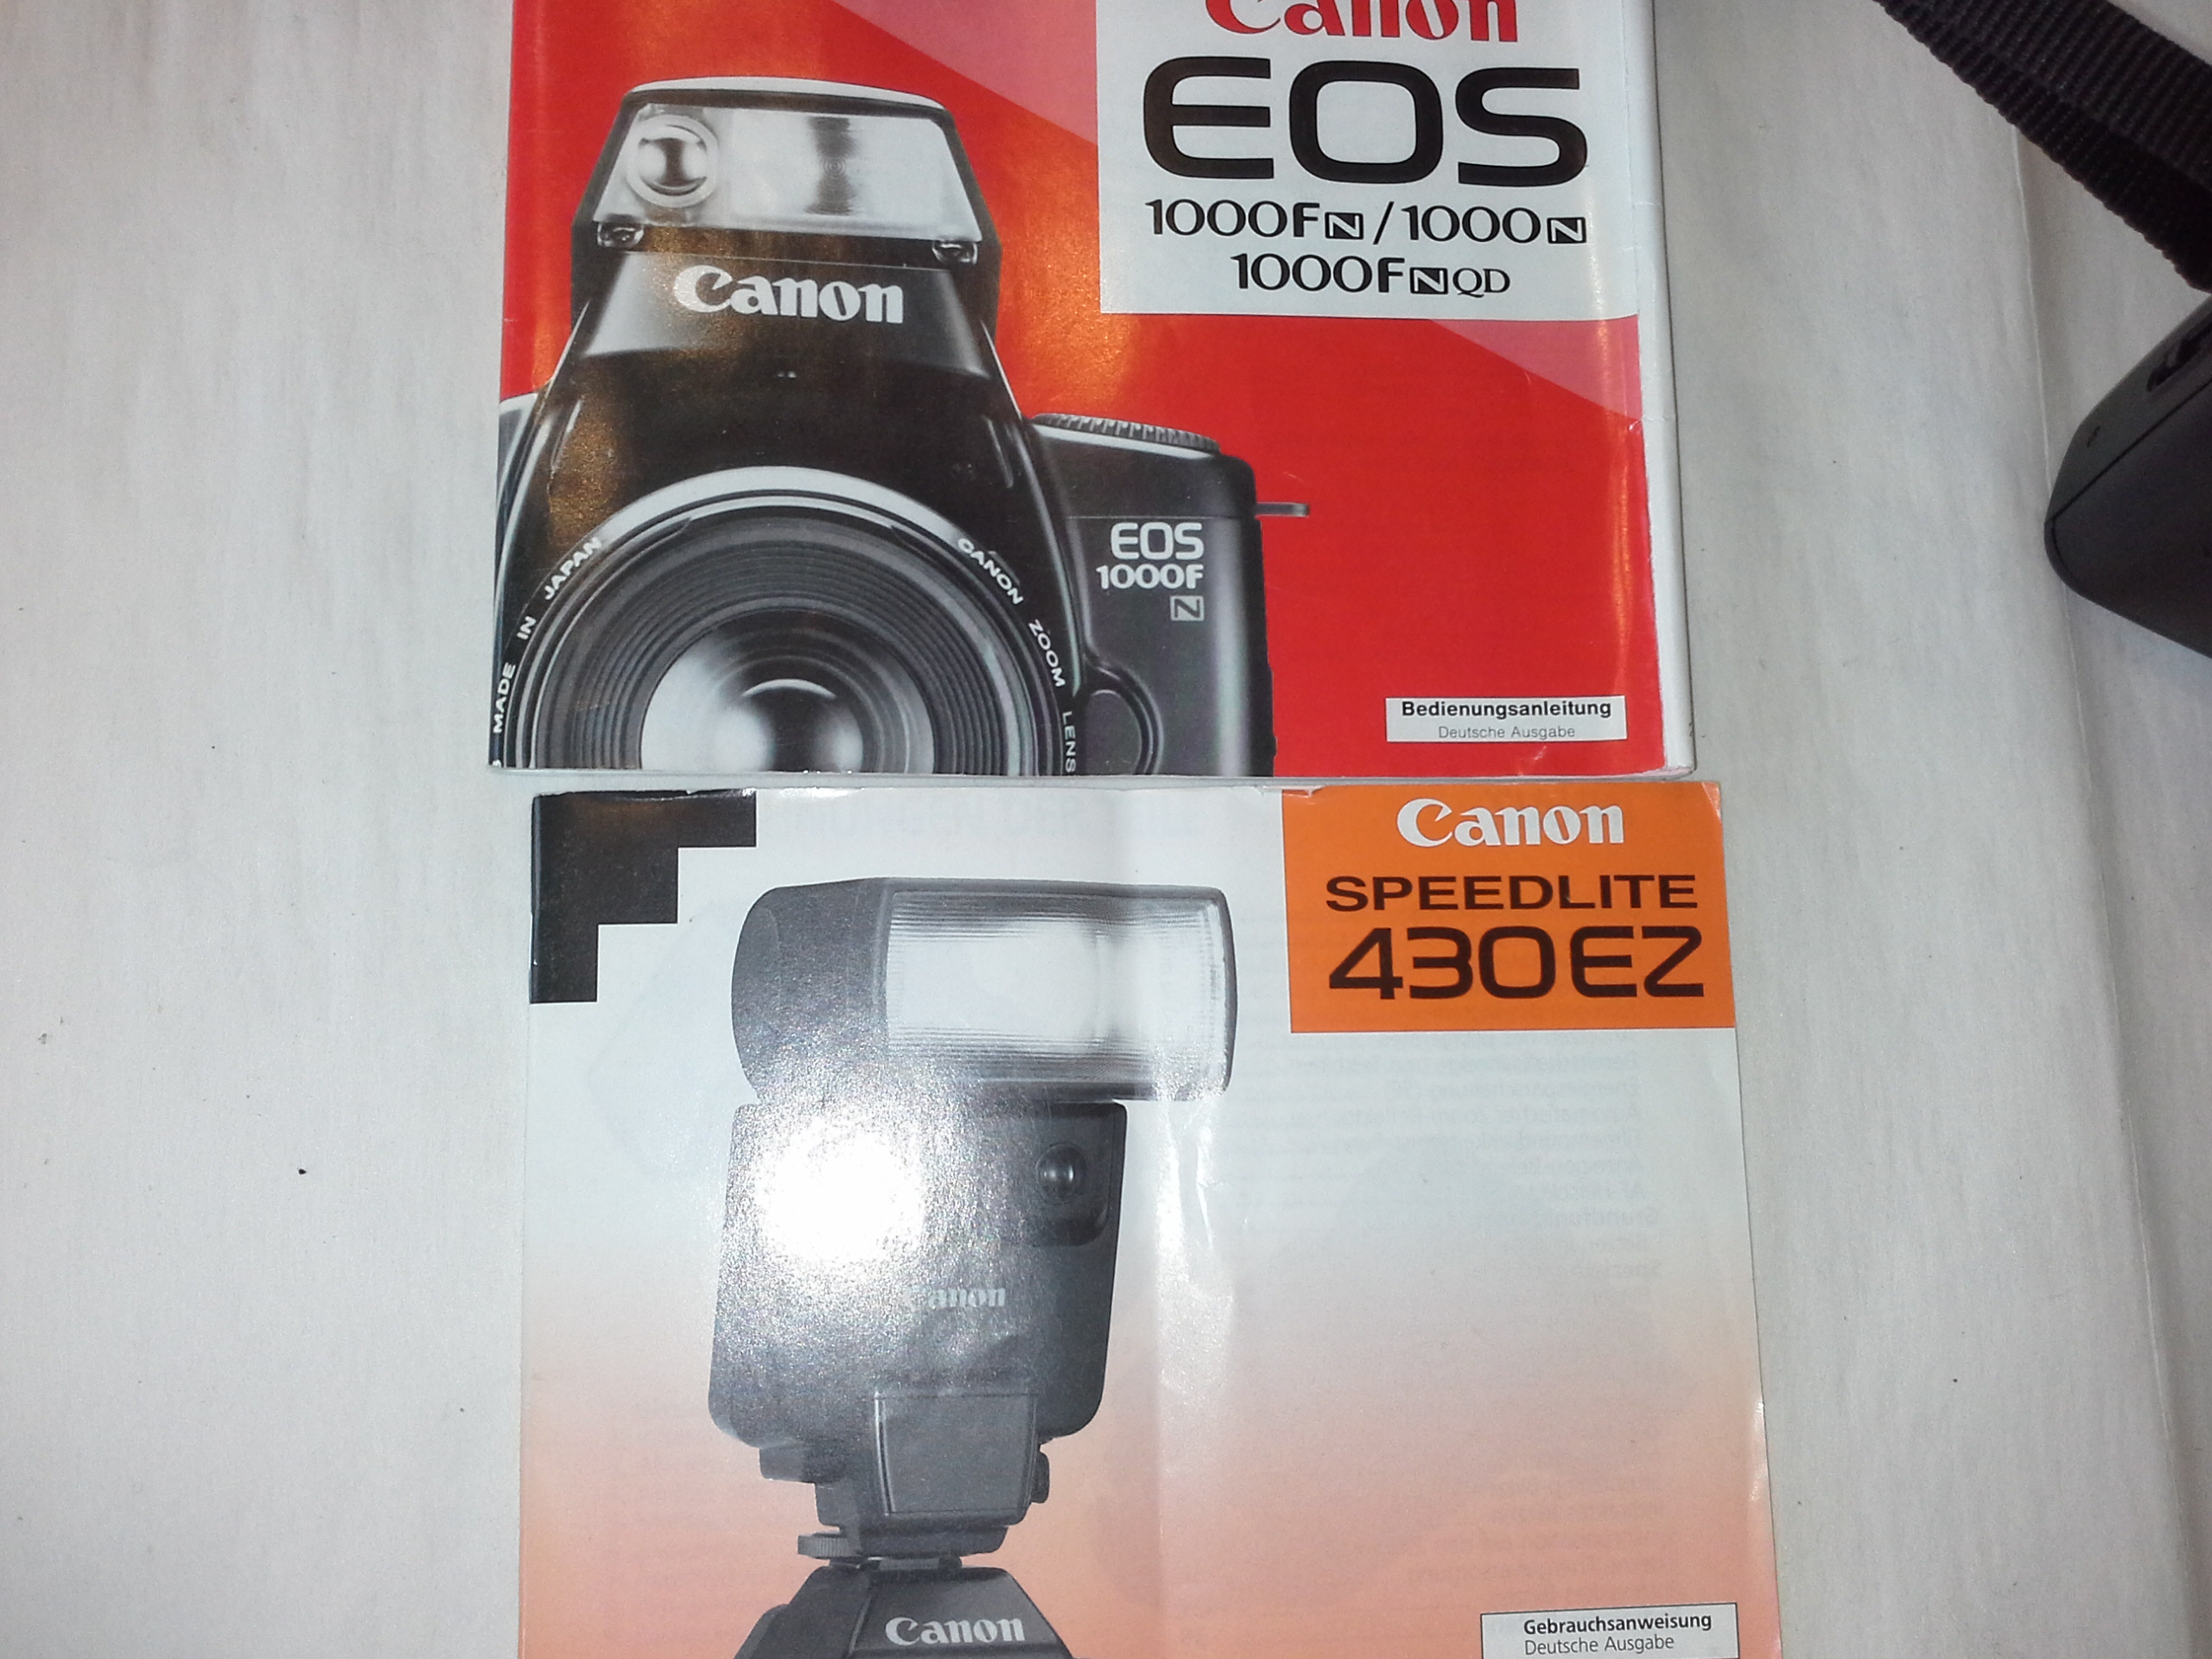 Canon Eos 1000 F Analoge Spiegelreflexkamera mit Speedlite 430EZ